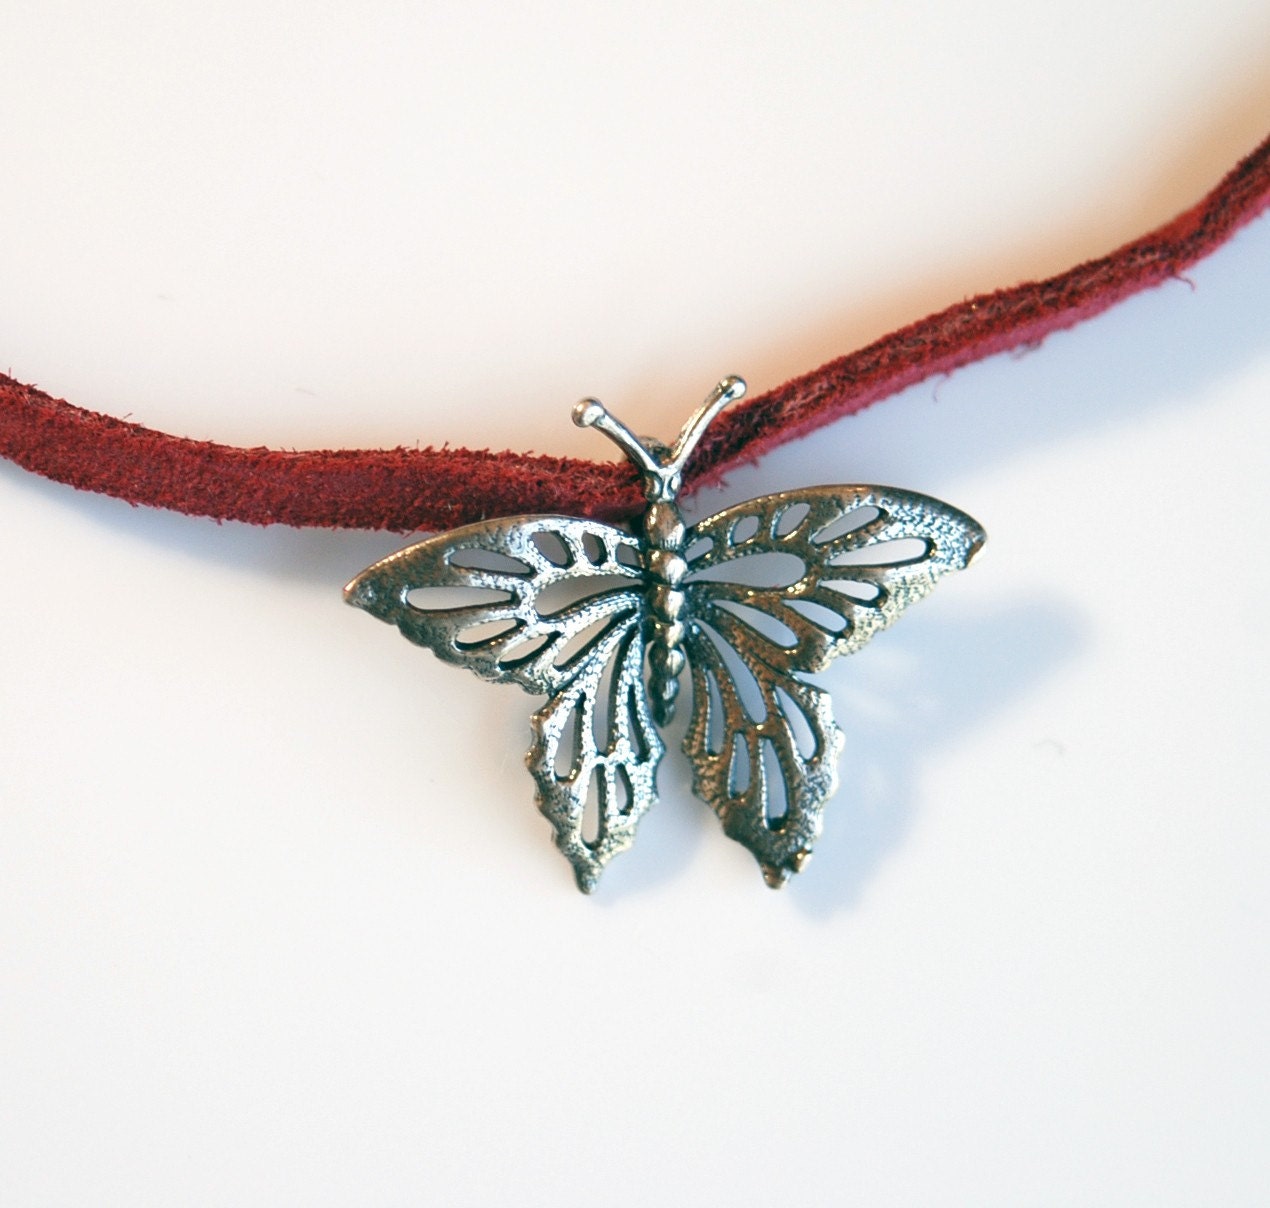 butterfly choker necklace